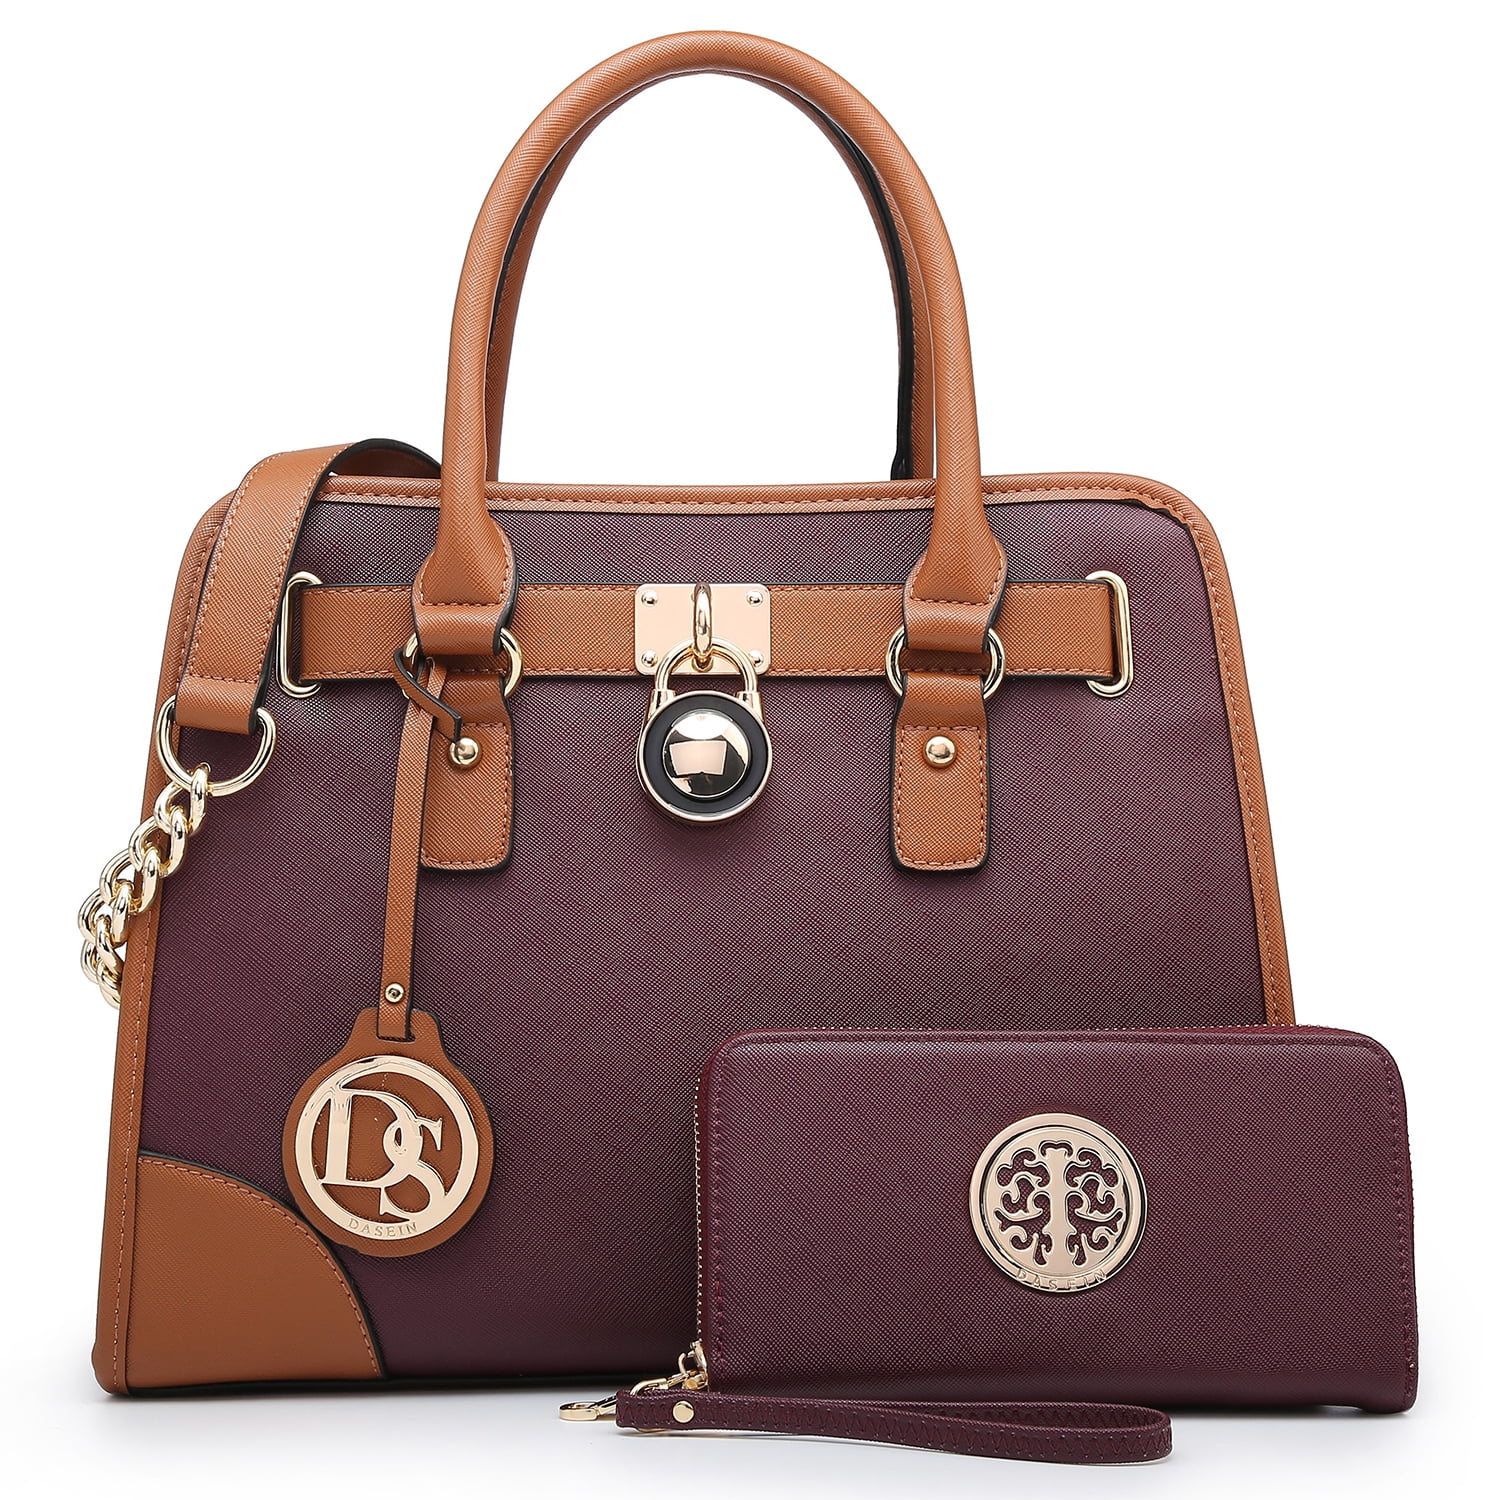 Dasein 2pcs Set Women Handbags Faux Leather Briefcase Purse Tote Shoulder Bags 